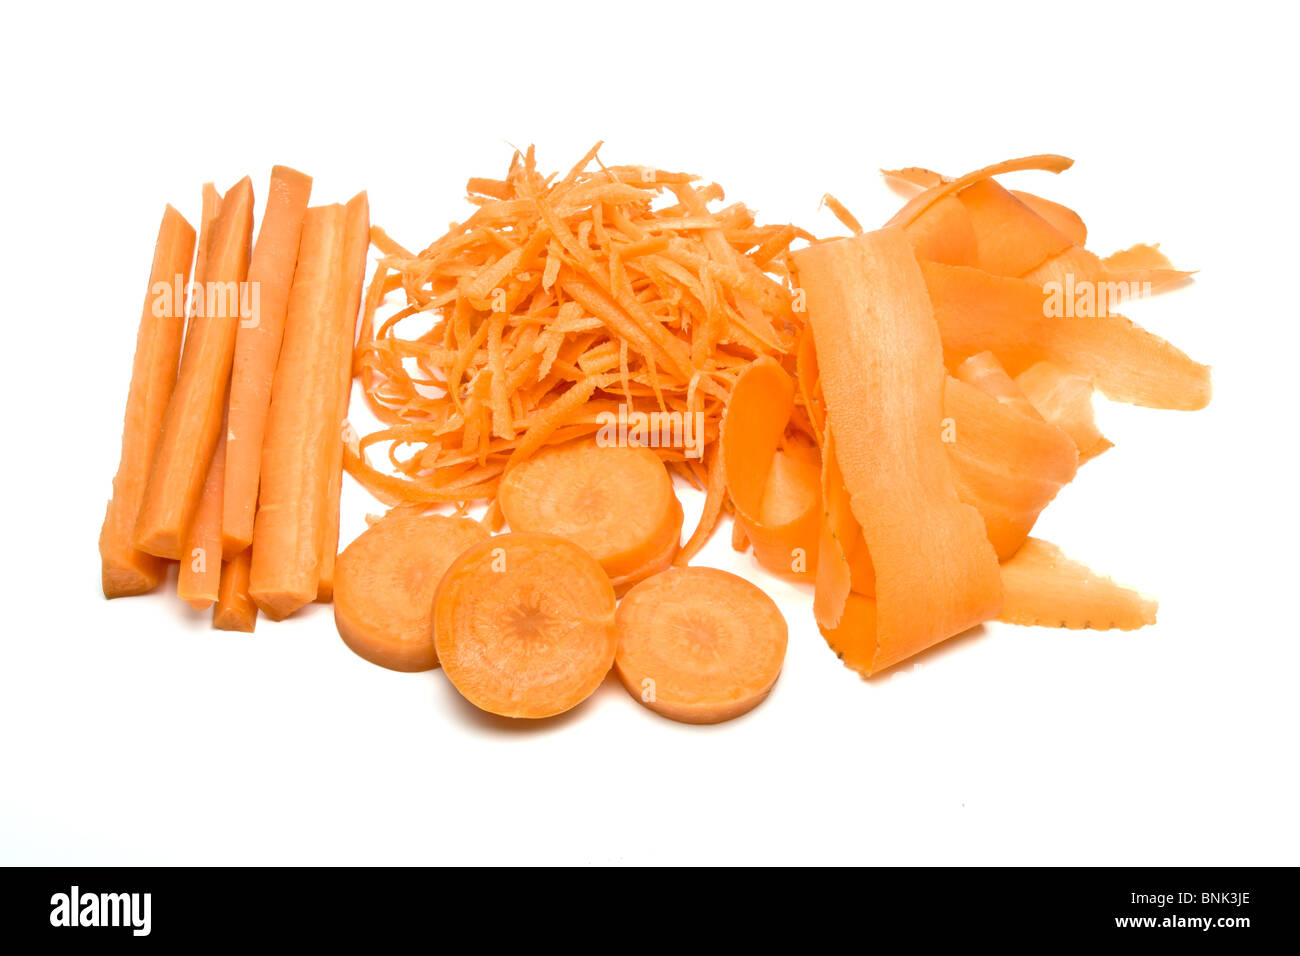 Preparate la carota in 4 modi diversi isolati contro uno sfondo bianco. Foto Stock